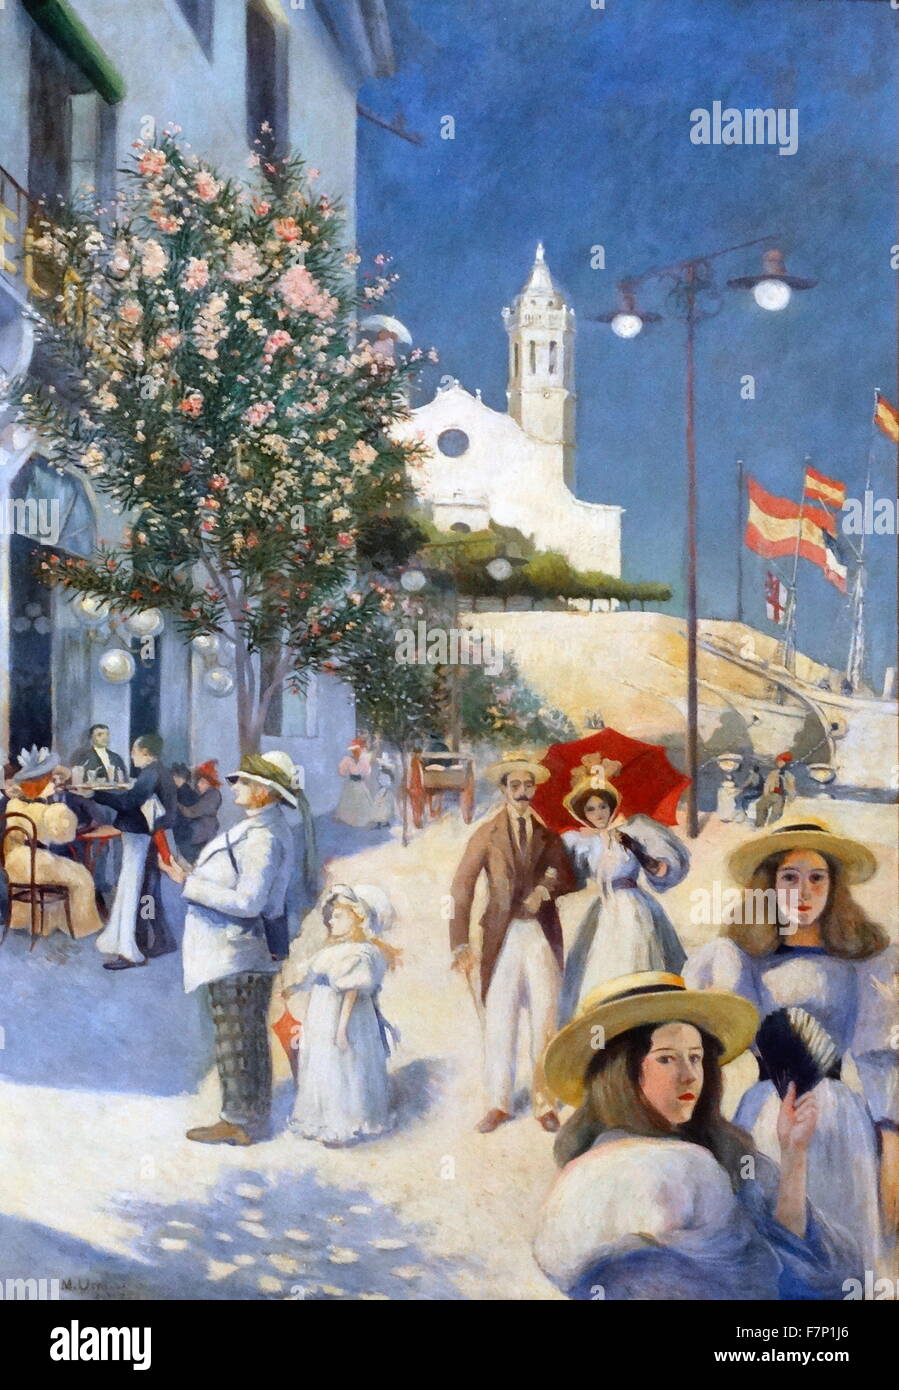 Peinture représentant Twentieth-Century Sitges par Miquel Utrillo (1862-1934) ingénieur, peintre, décorateur, critique d'art et promoteur de l'espagnol. Datée 1895 Banque D'Images